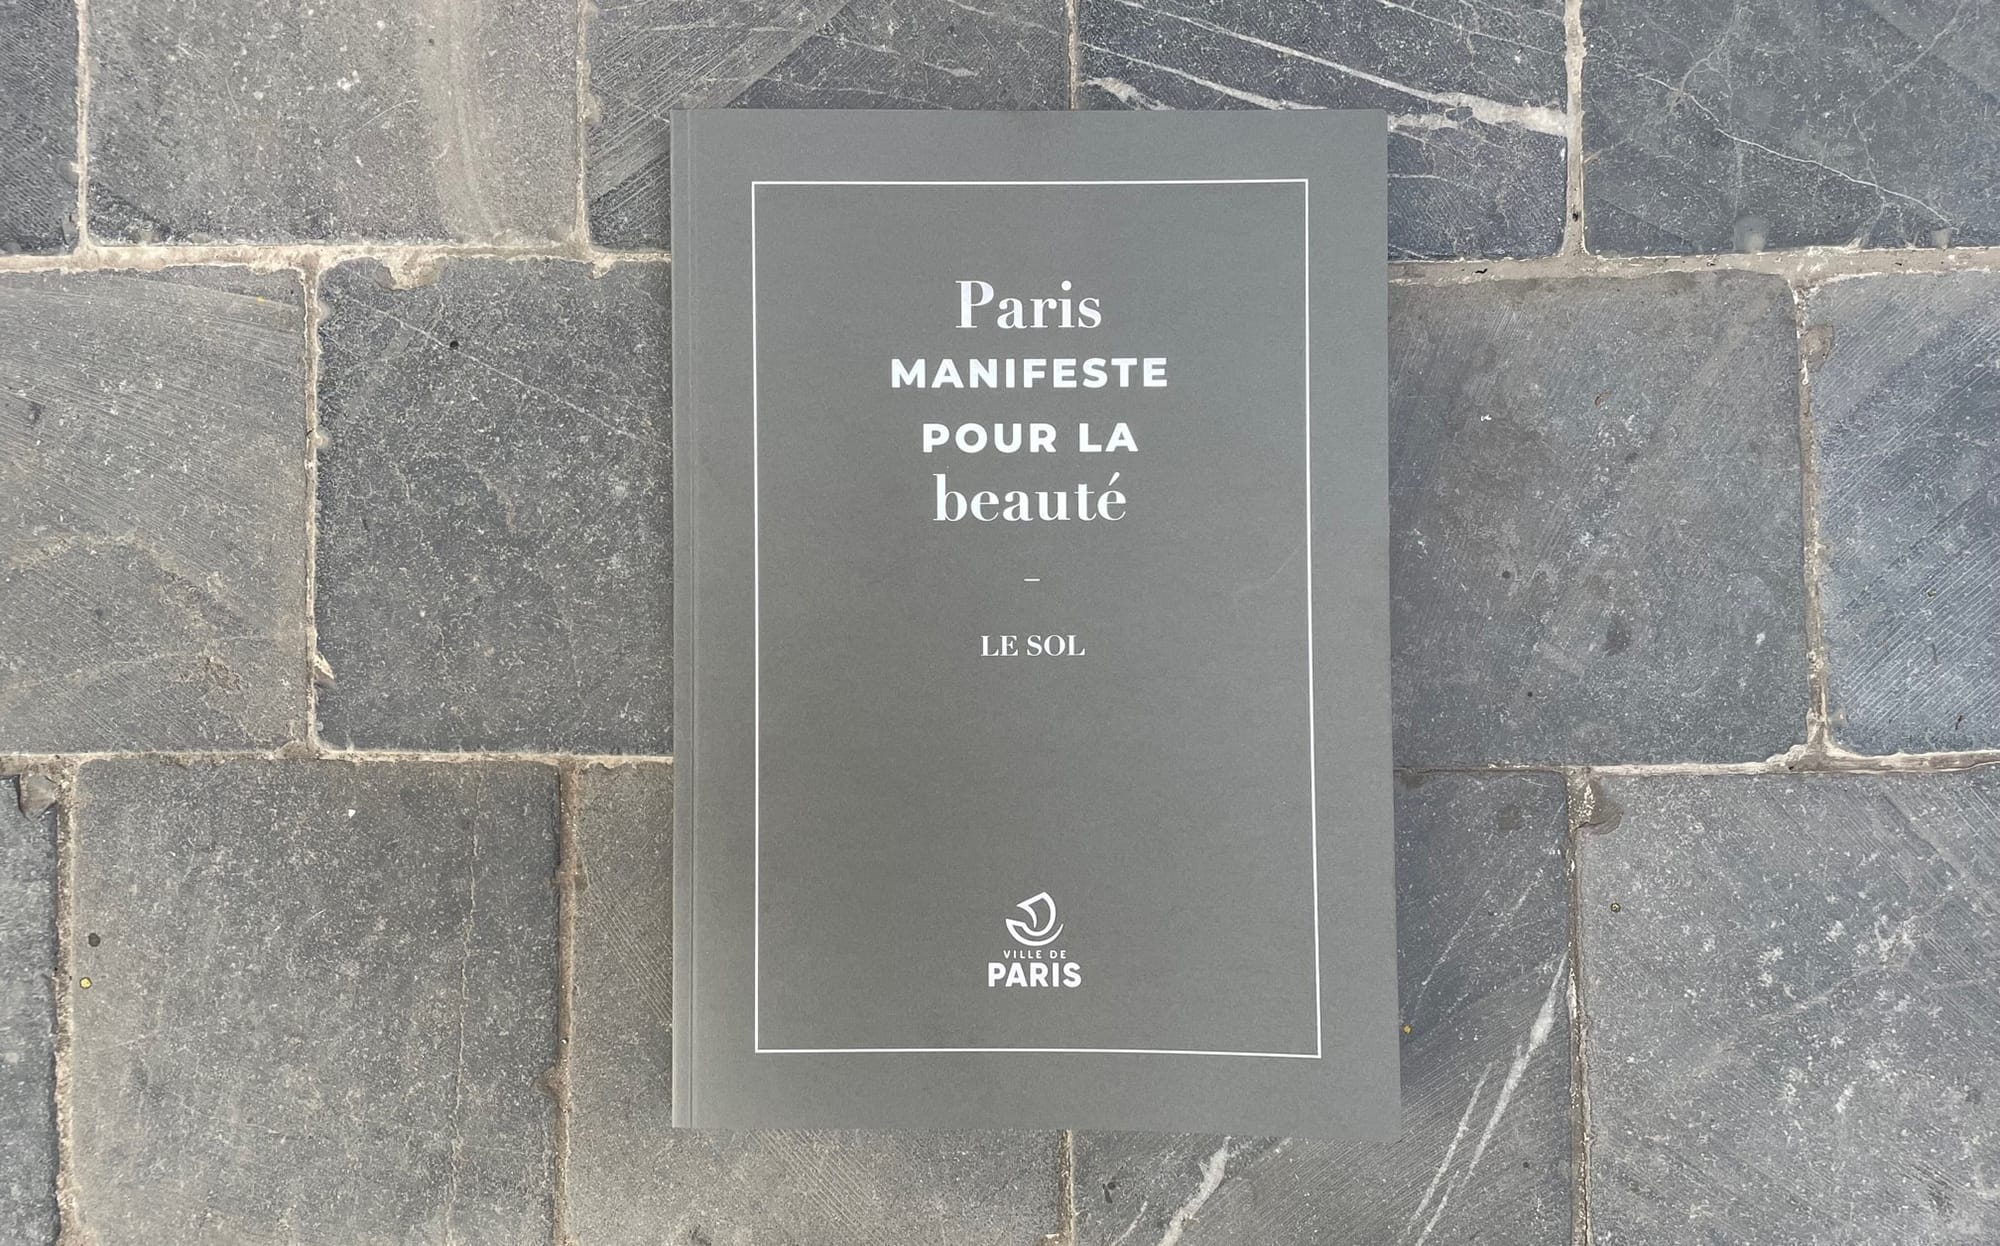 Paris, manifeste pour la beauté